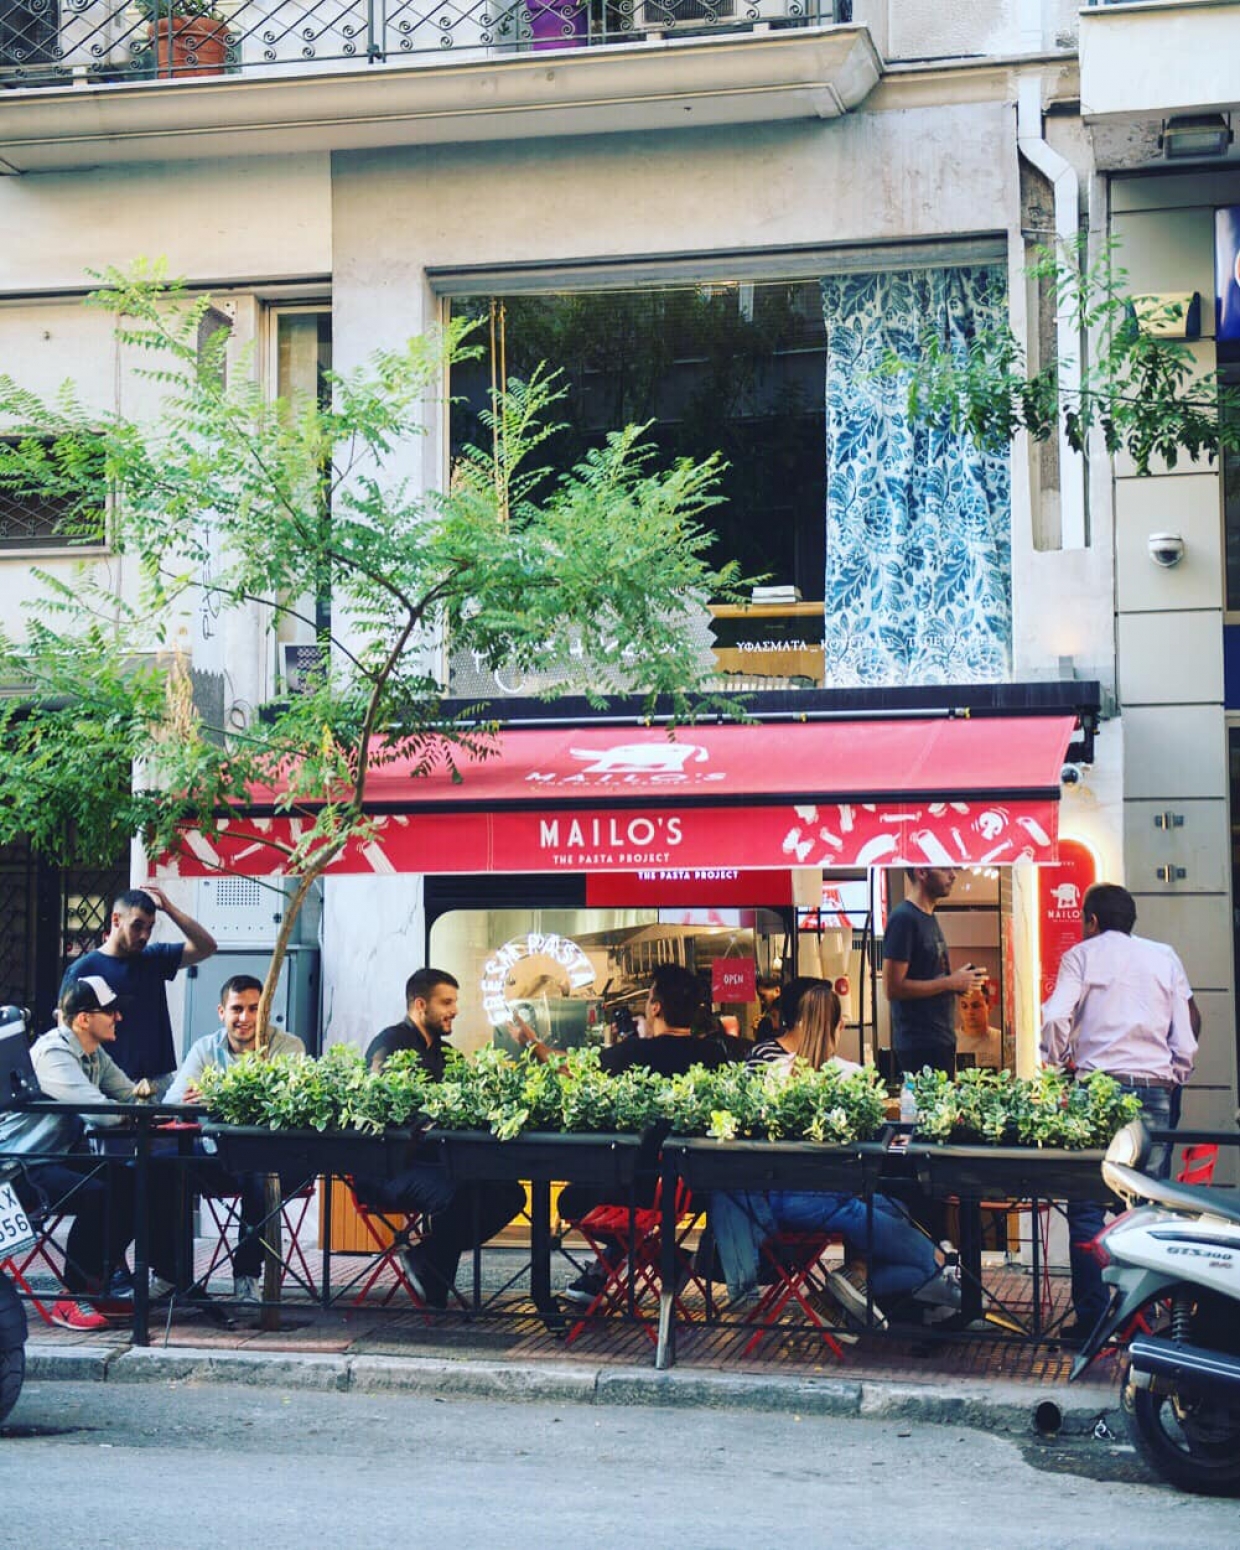 Στο Χαλάνδρι θα ανοίξει το επόμενο Mailo’s - The Pasta Project